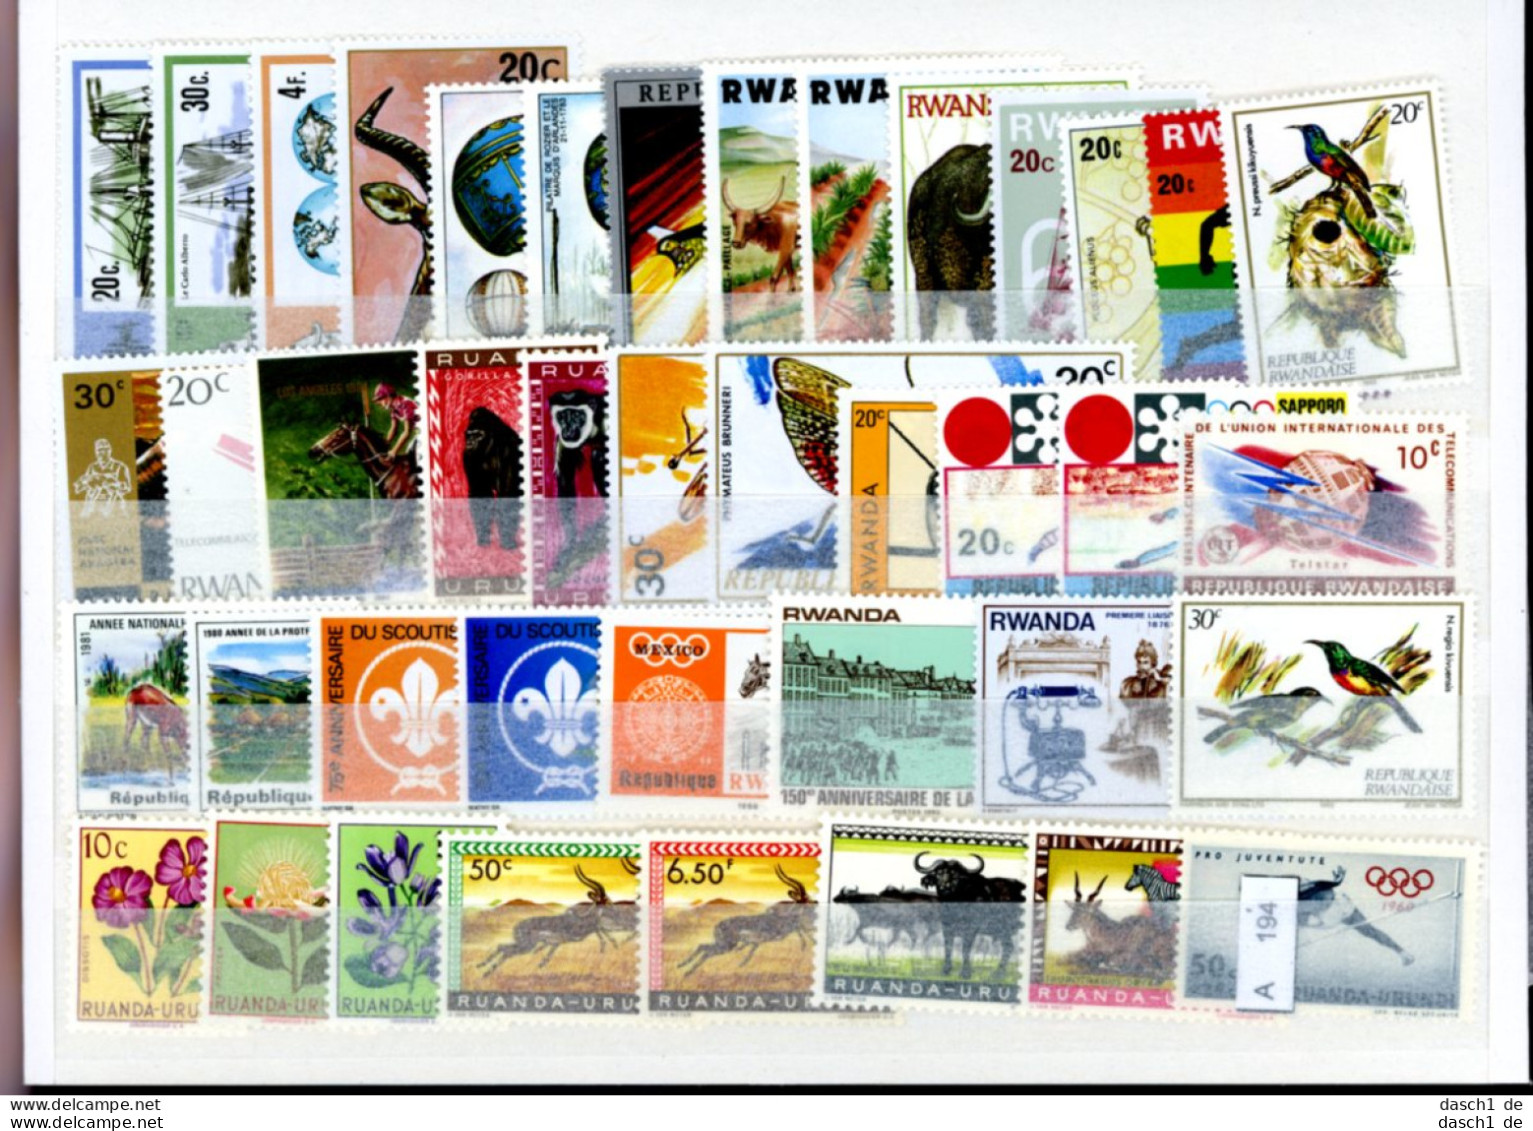 Slg. Postfrische Marken, Xx, 2 Lose Auf A5-Karten Dichtgesteckt, Schwerpunkt Motivmarken, Afrika - Collections (without Album)